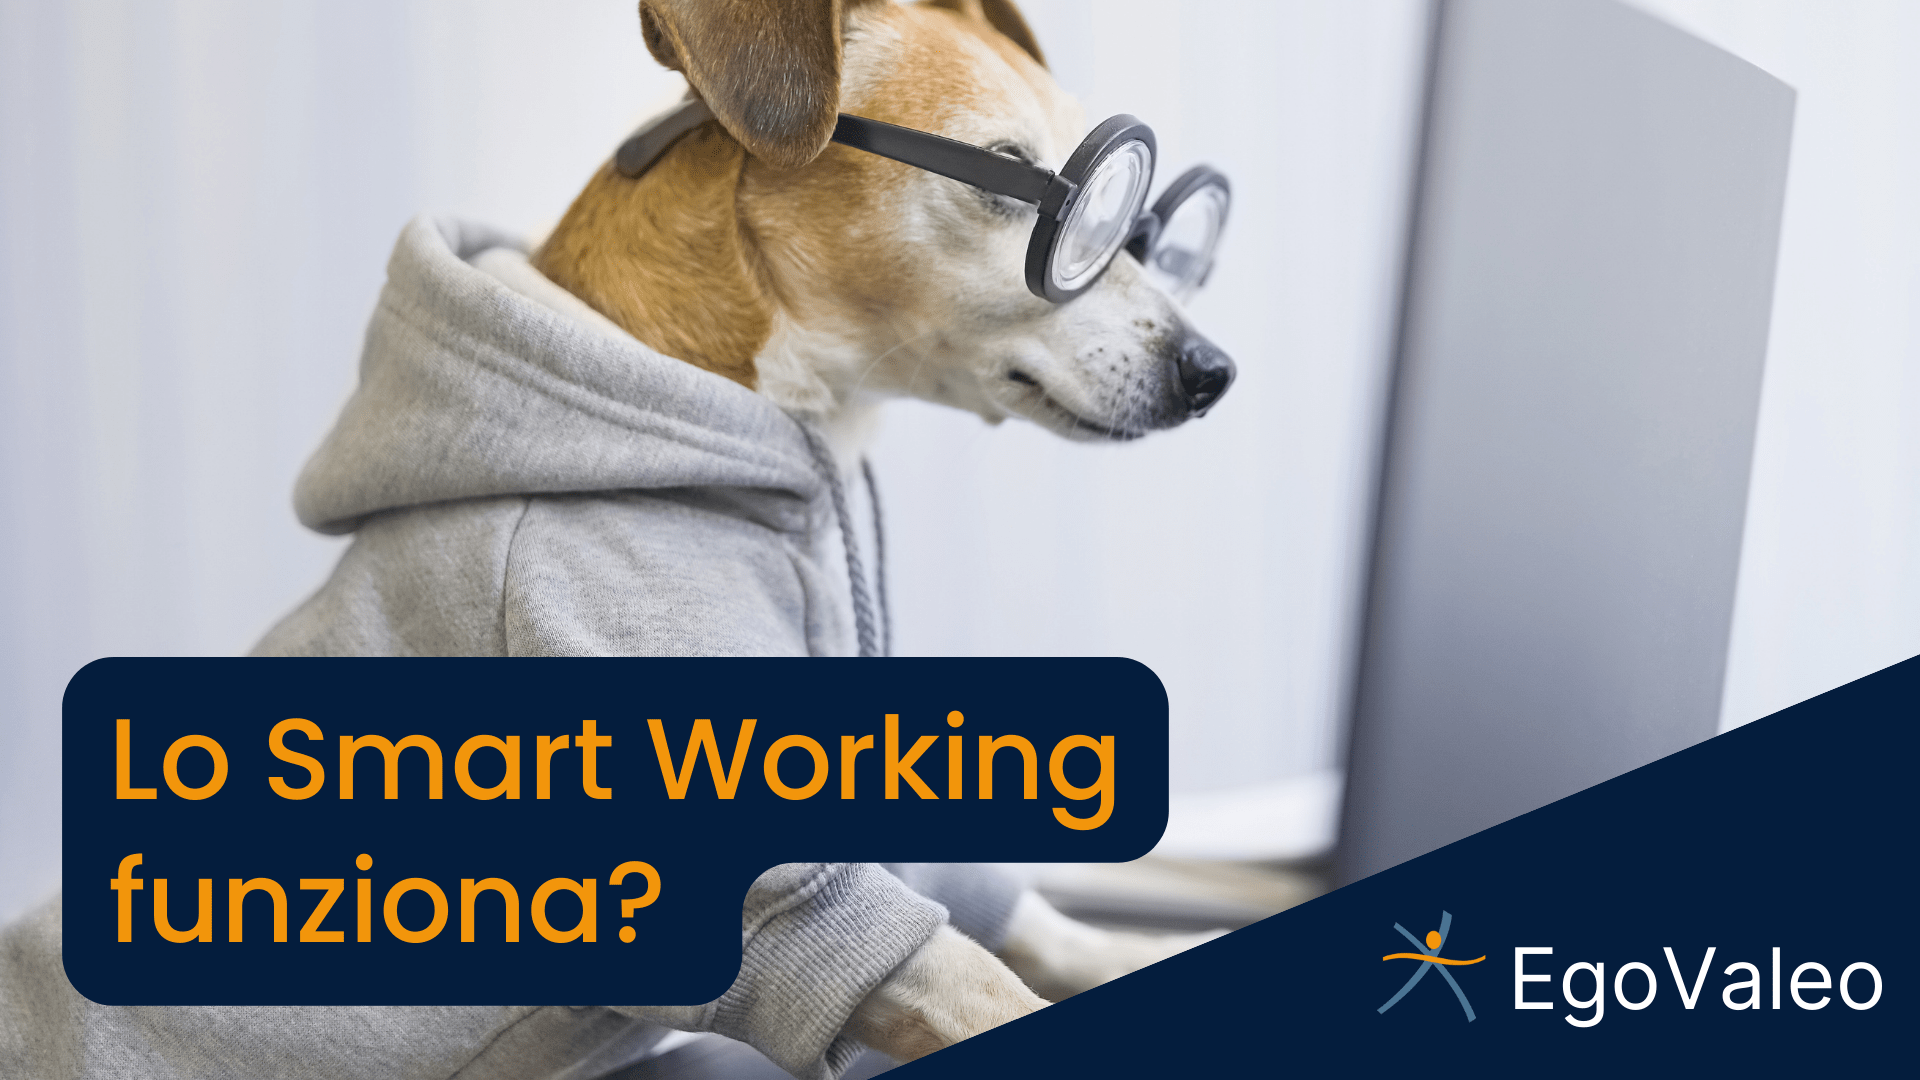 Lo smart working funziona?